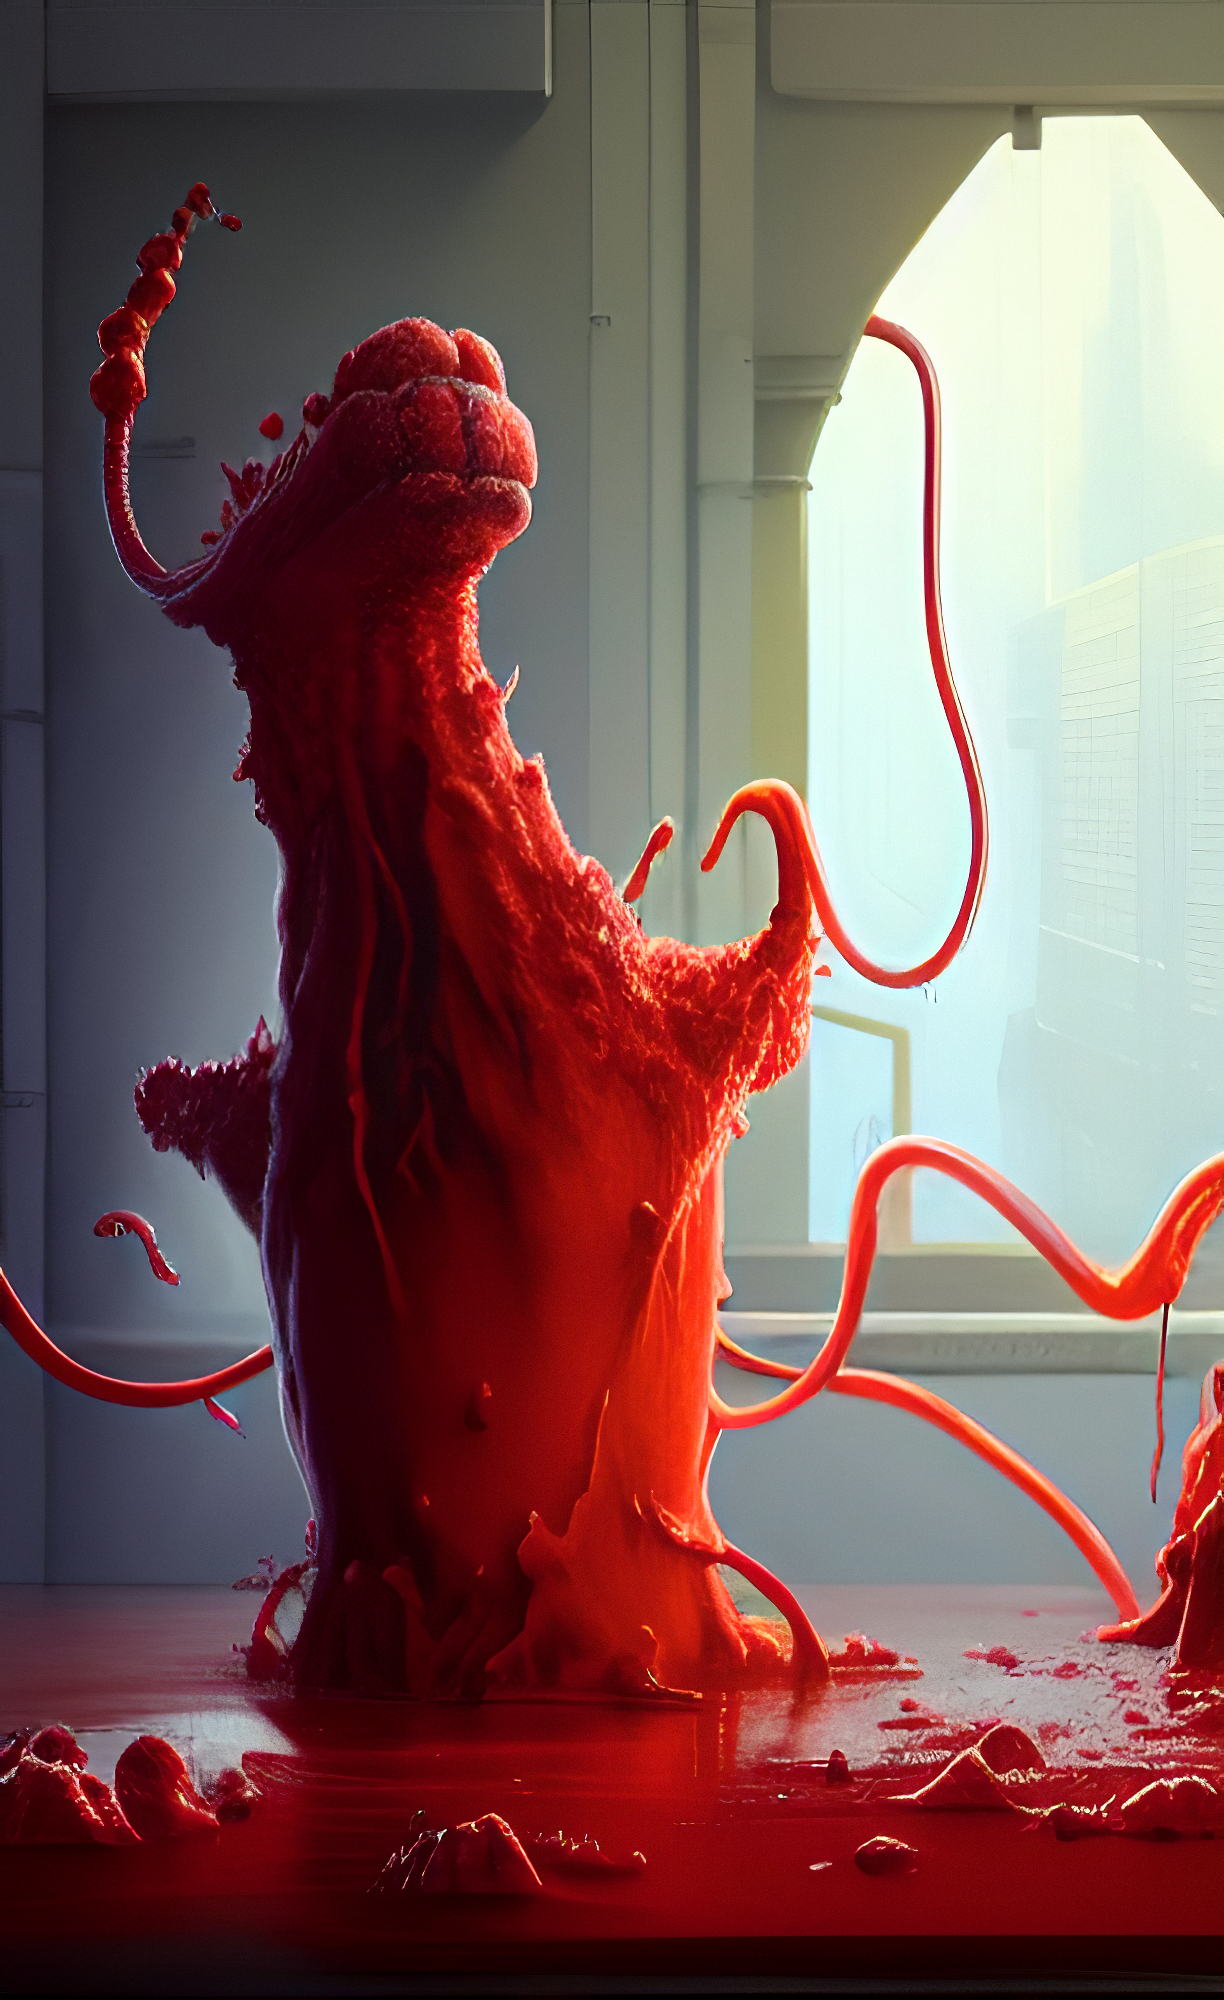 red slime monster